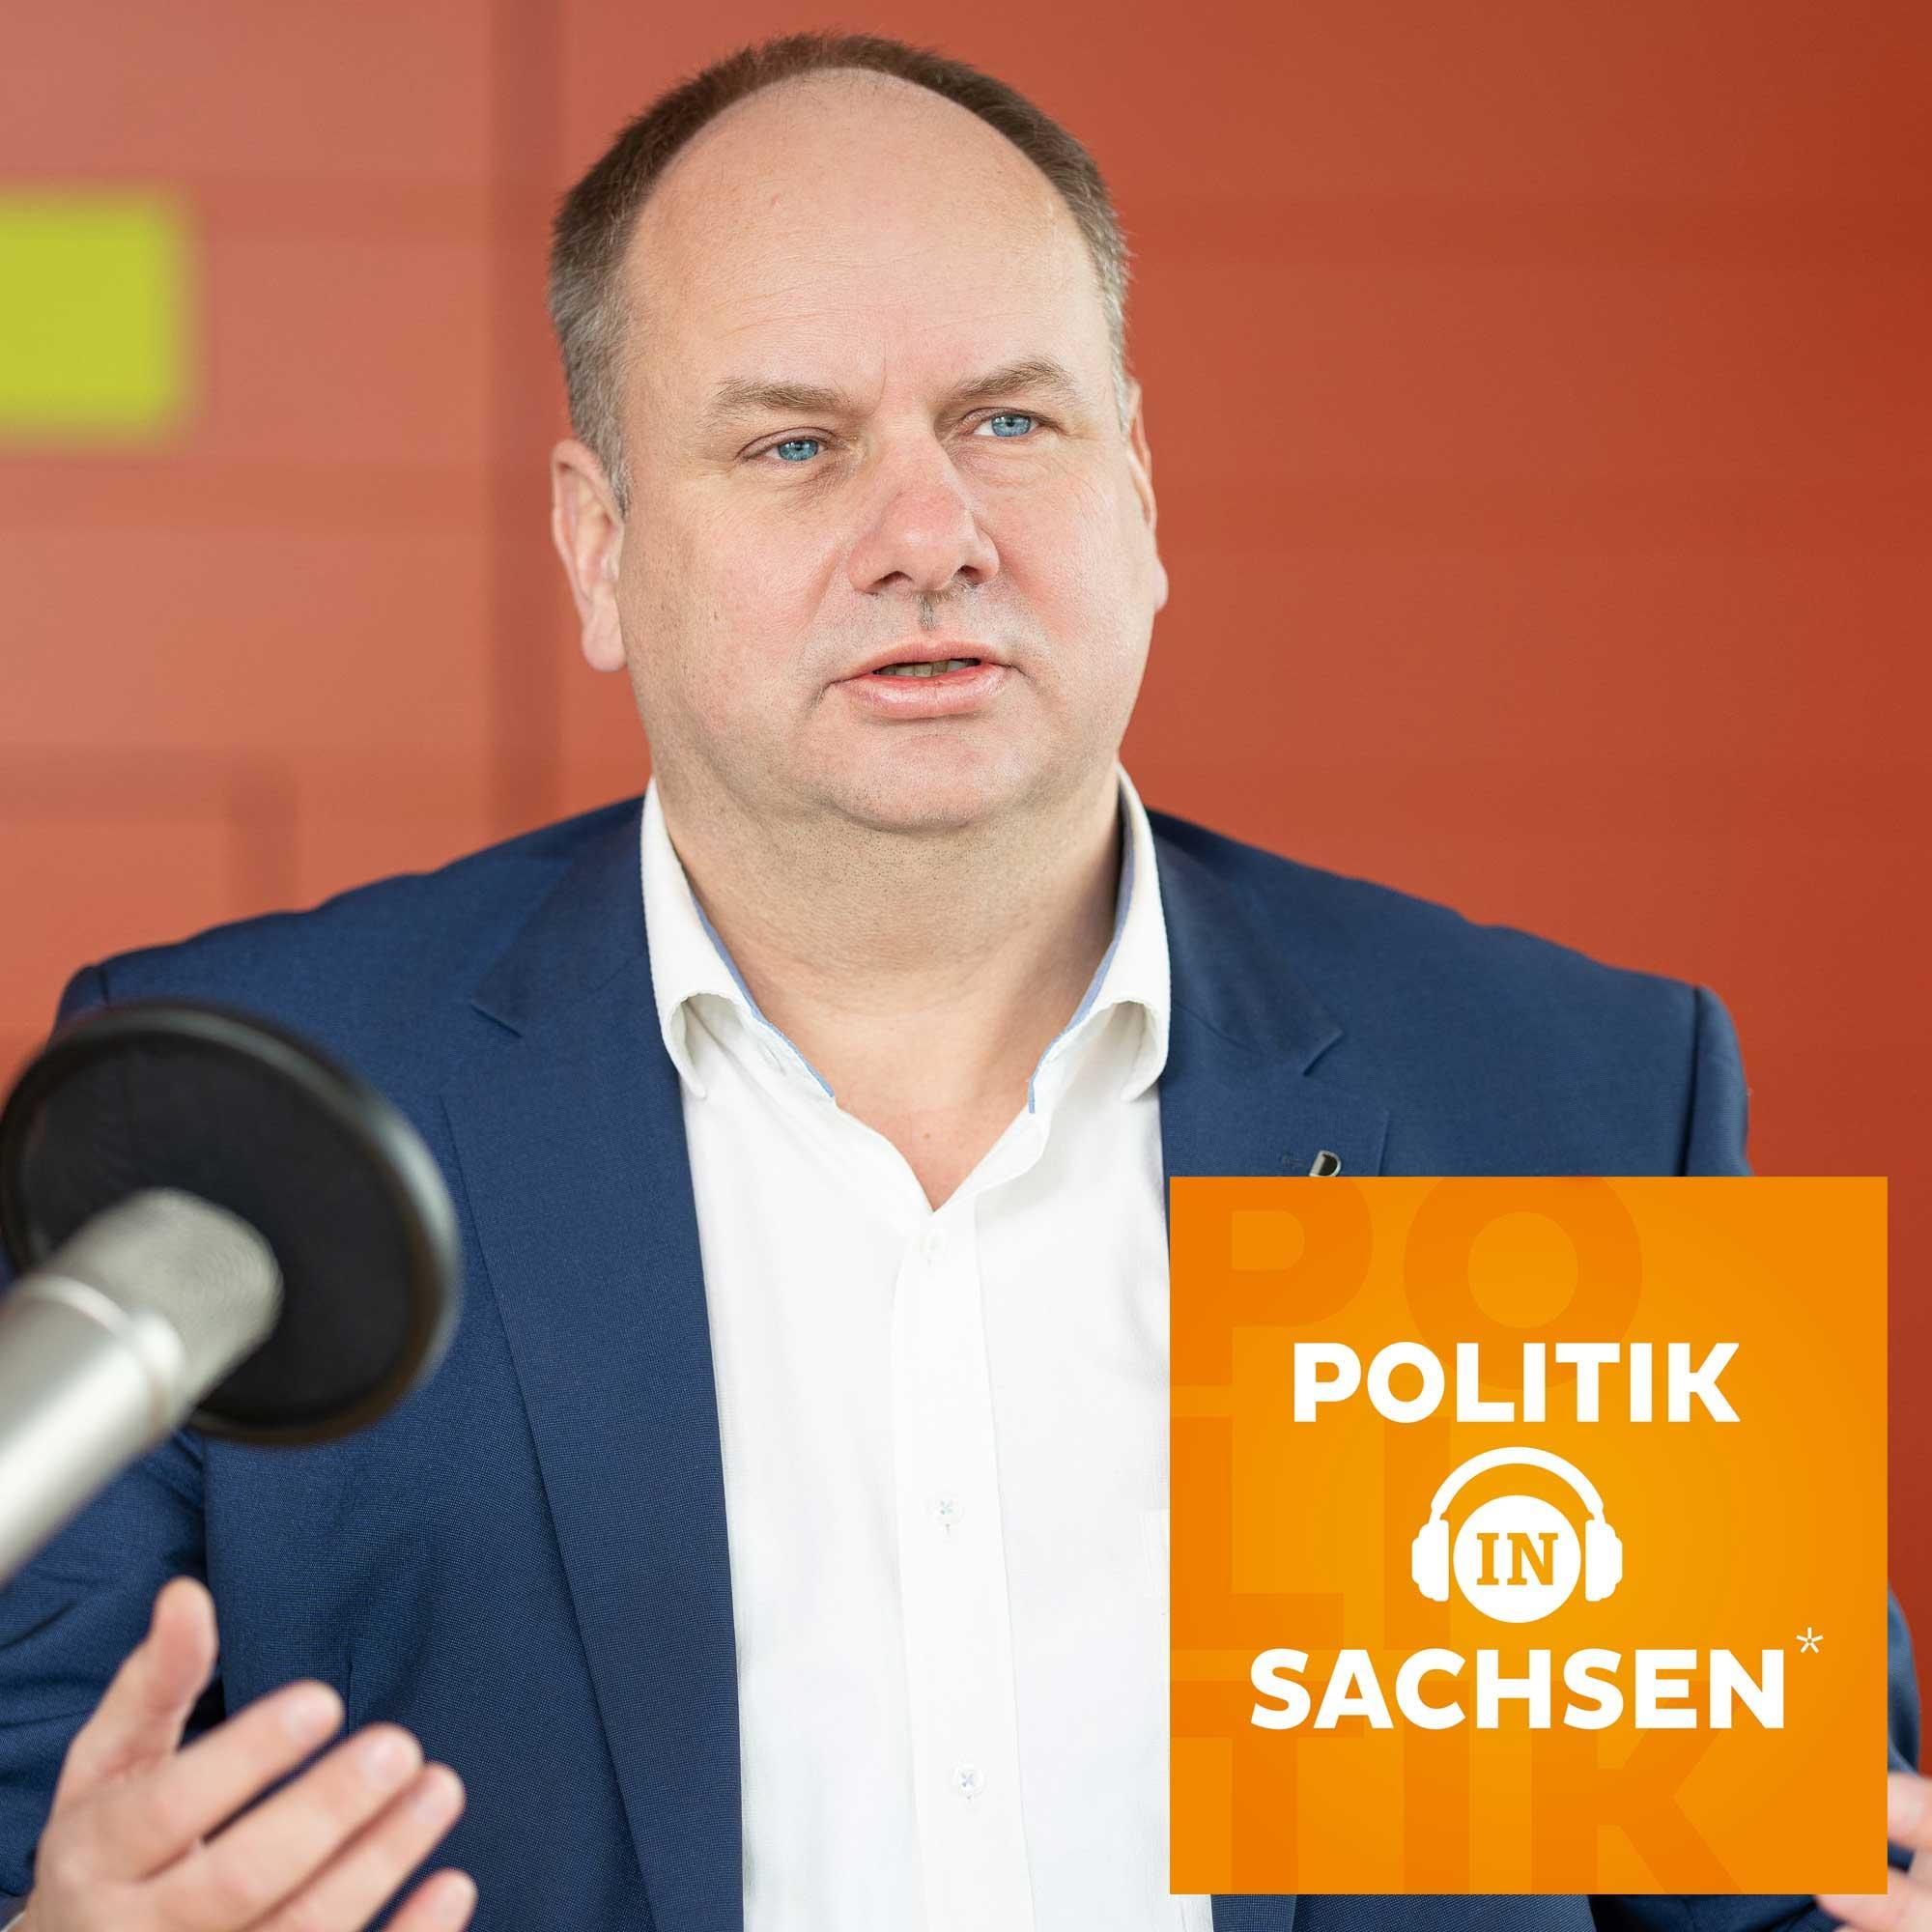 Dresden im OB-Wahljahr: Dirk Hilbert über die Stadt, die Zukunft und Corona